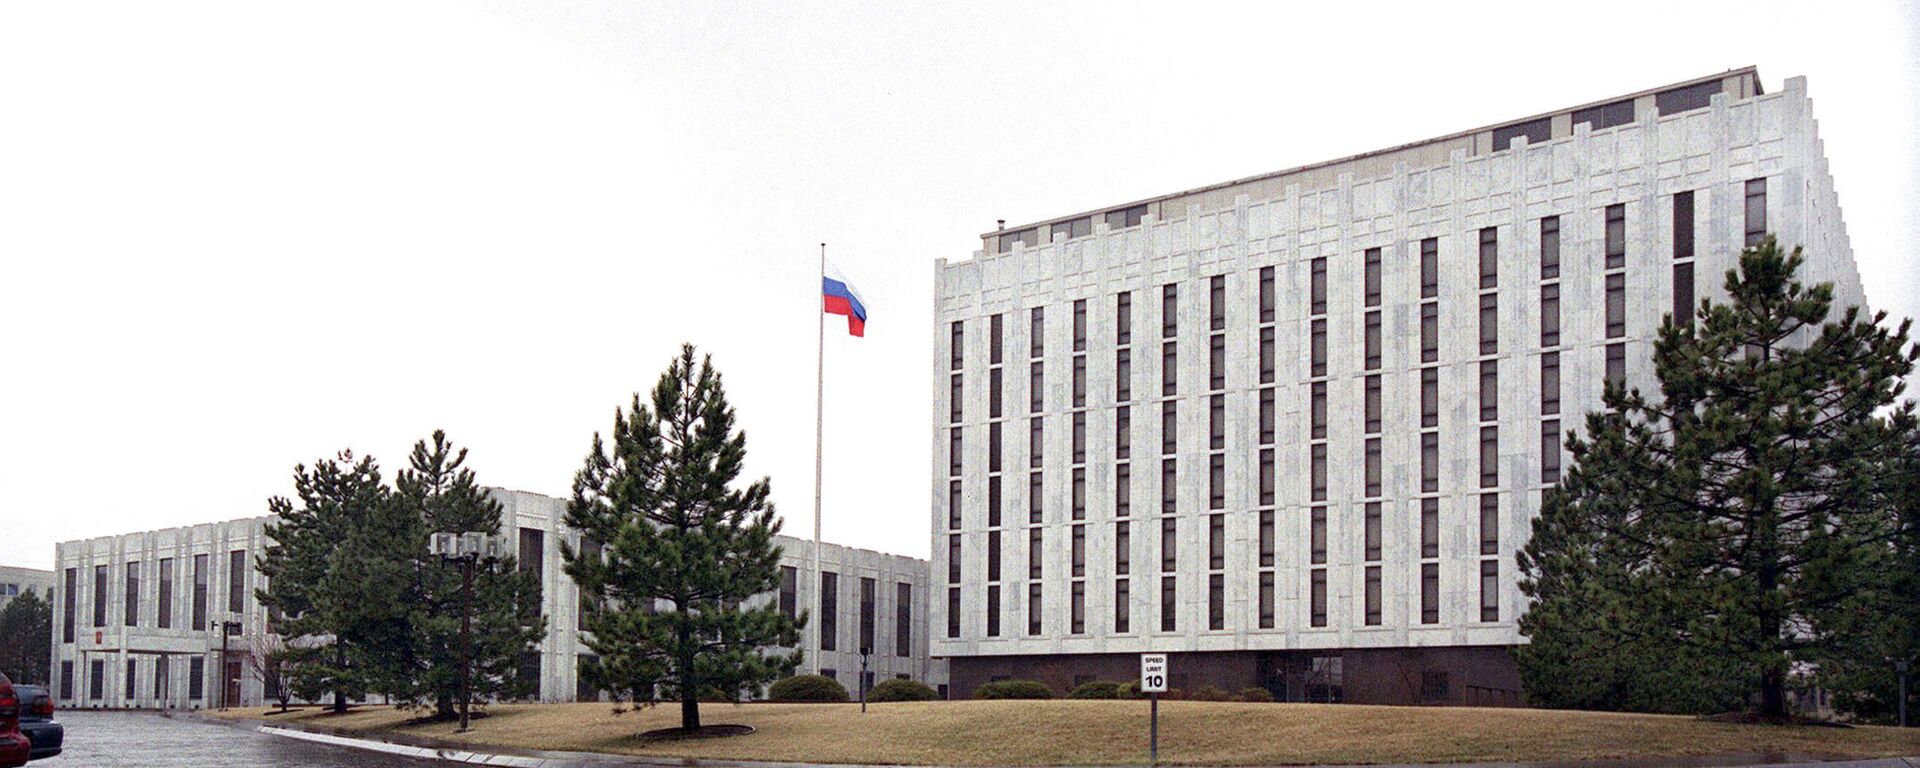 Здание Российского посольства в Вашингтоне - Sputnik Việt Nam, 1920, 17.03.2021